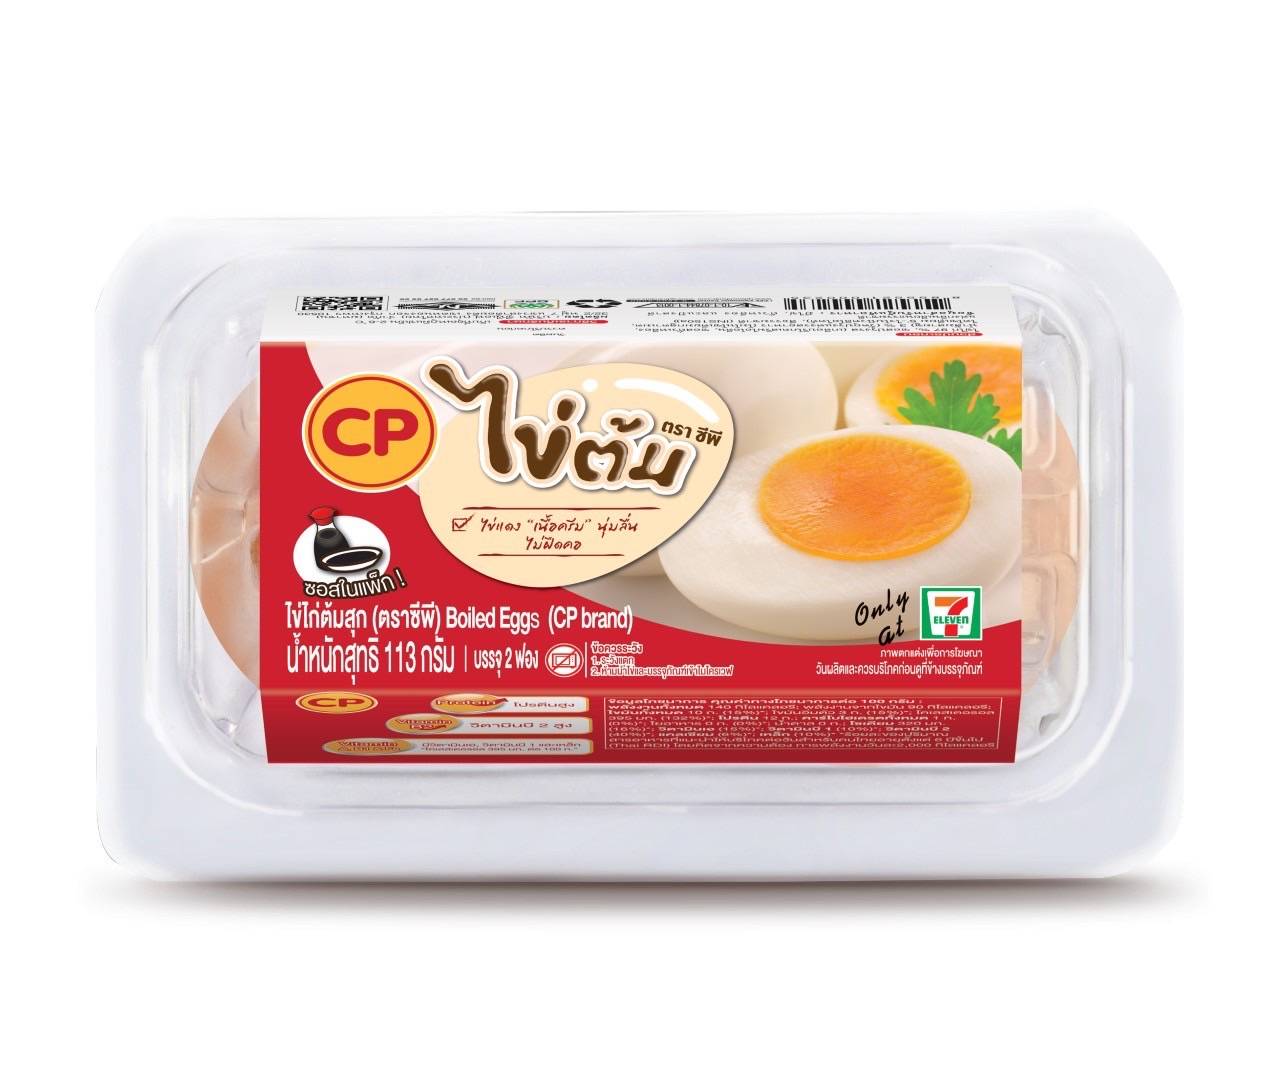 ซีพีเอฟ มุ่งมั่นพัฒนาอาหารดีต่อใจ ดีต่อโลก เปิดตัวถาดไข่ไก่ทำจากพลาสติกรีไซเคิล 100%